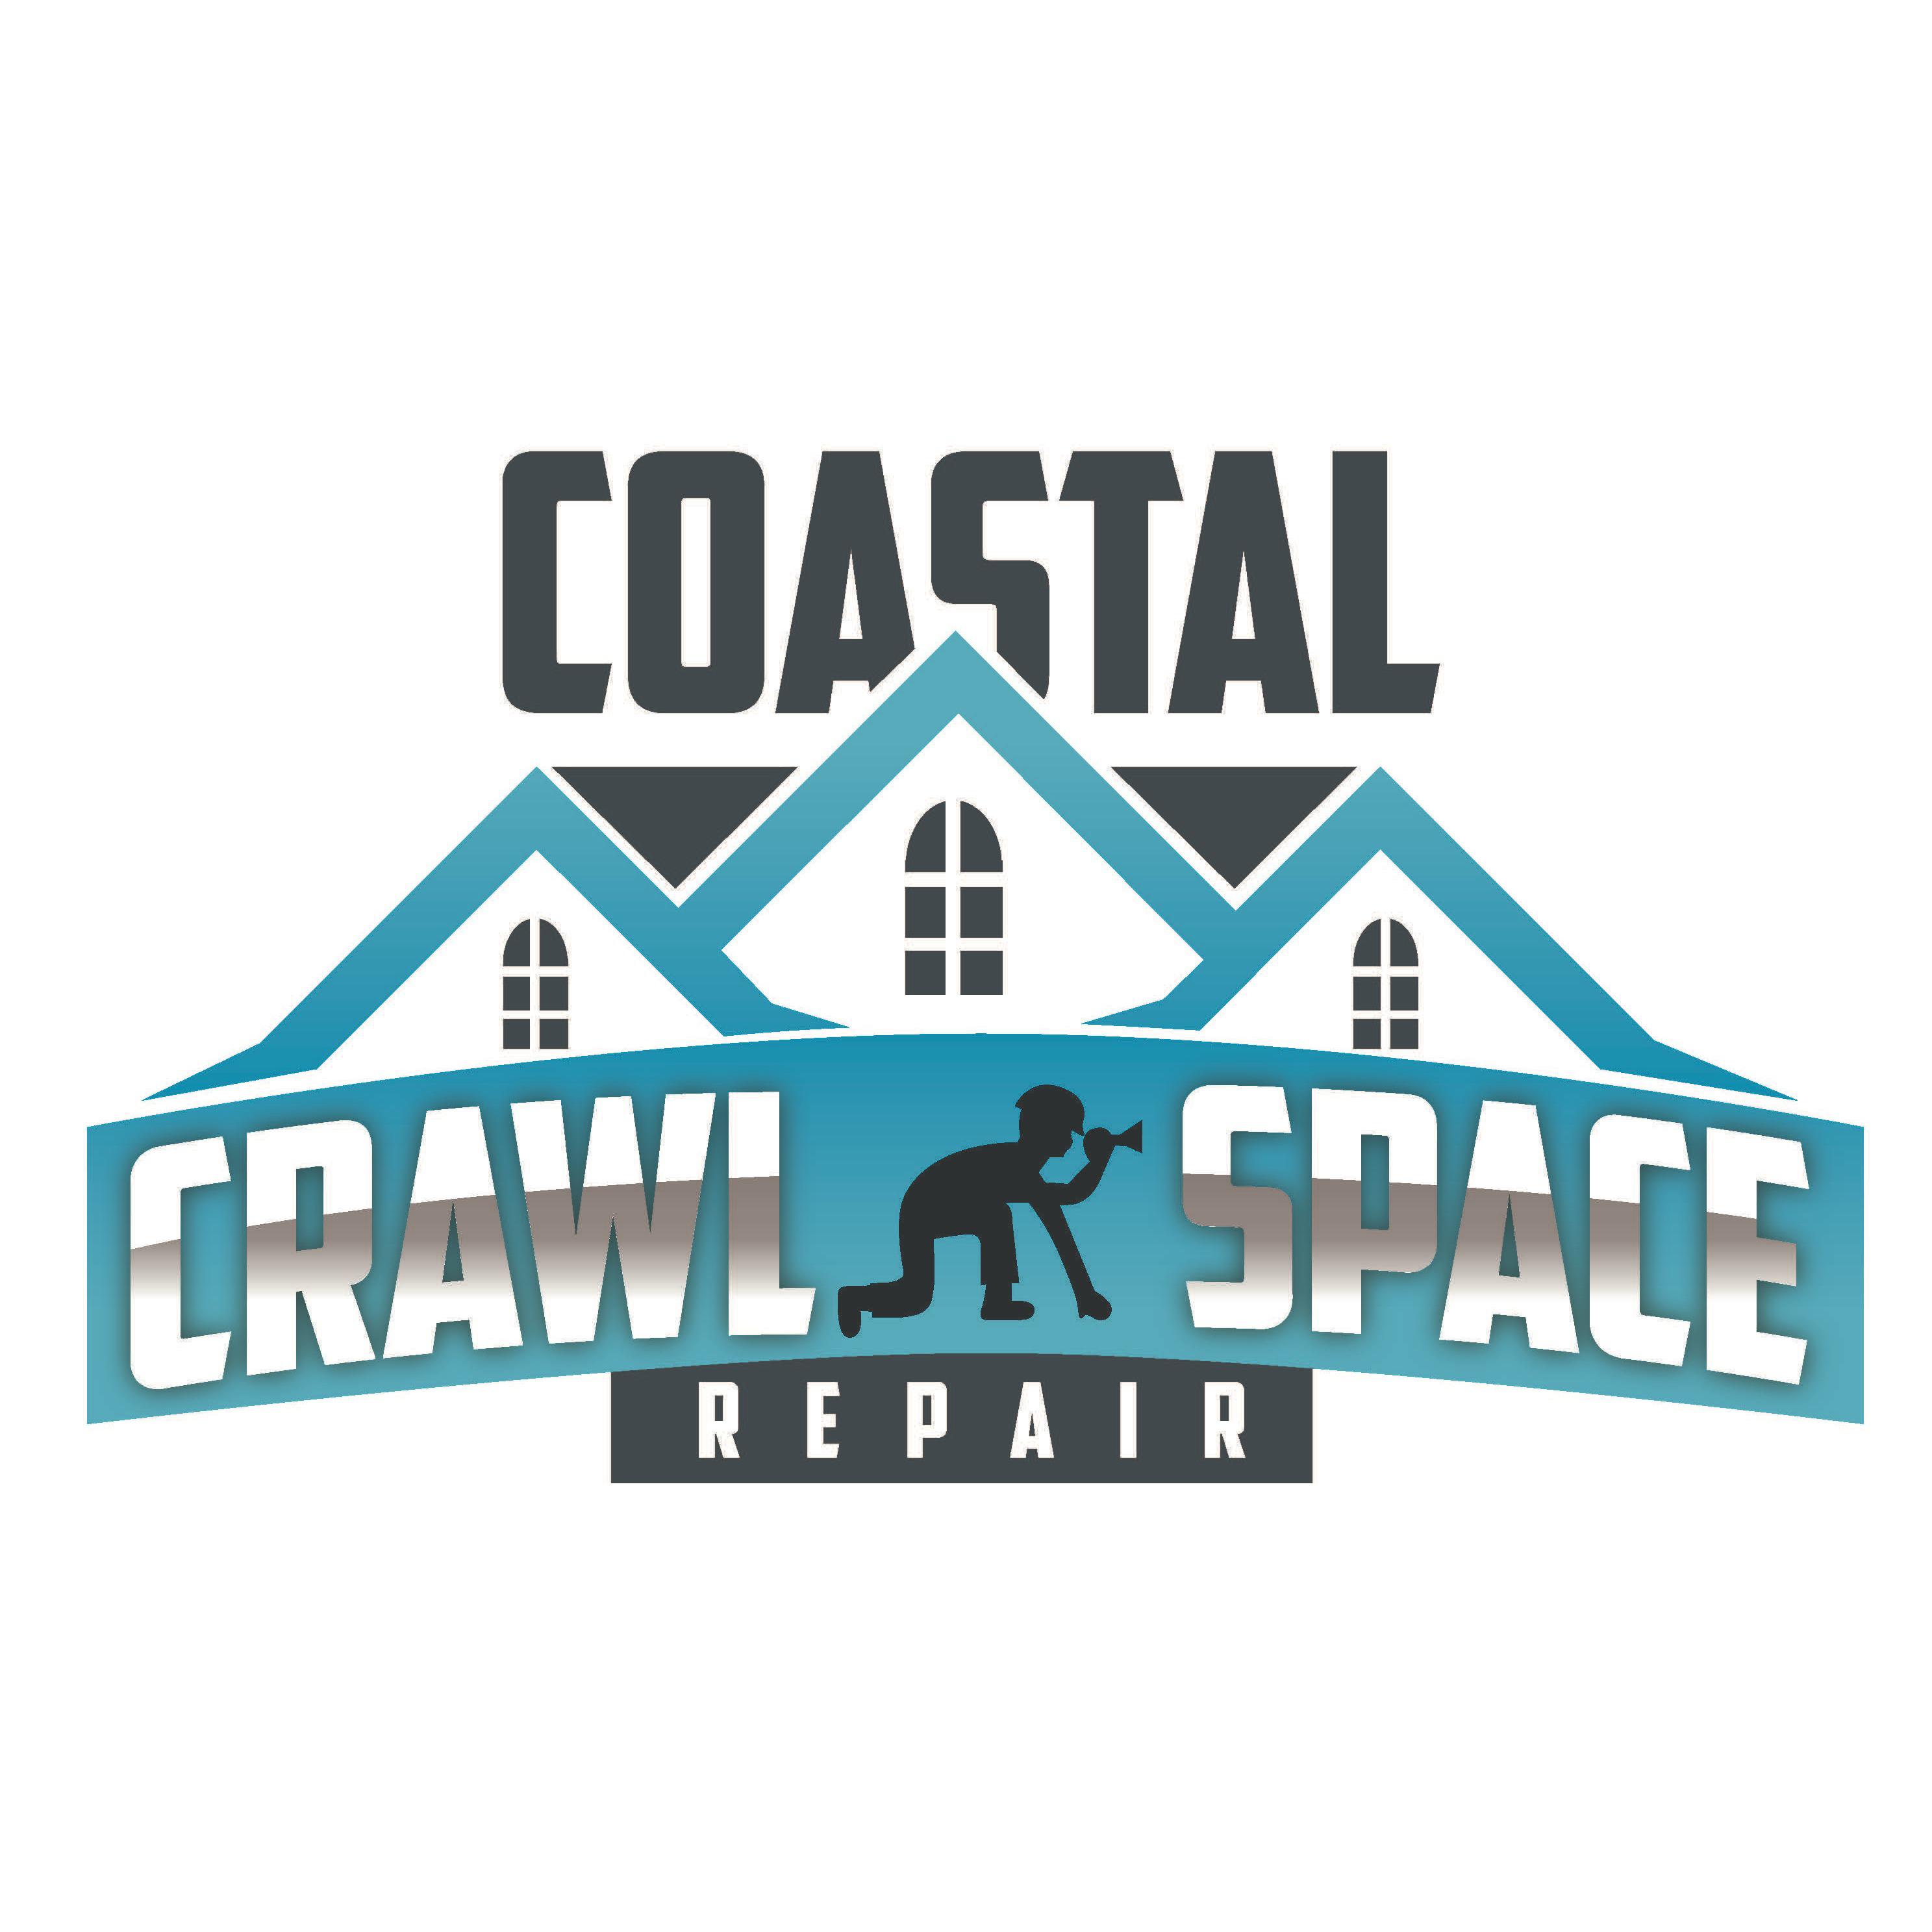 Coastal Crawl Space Repair